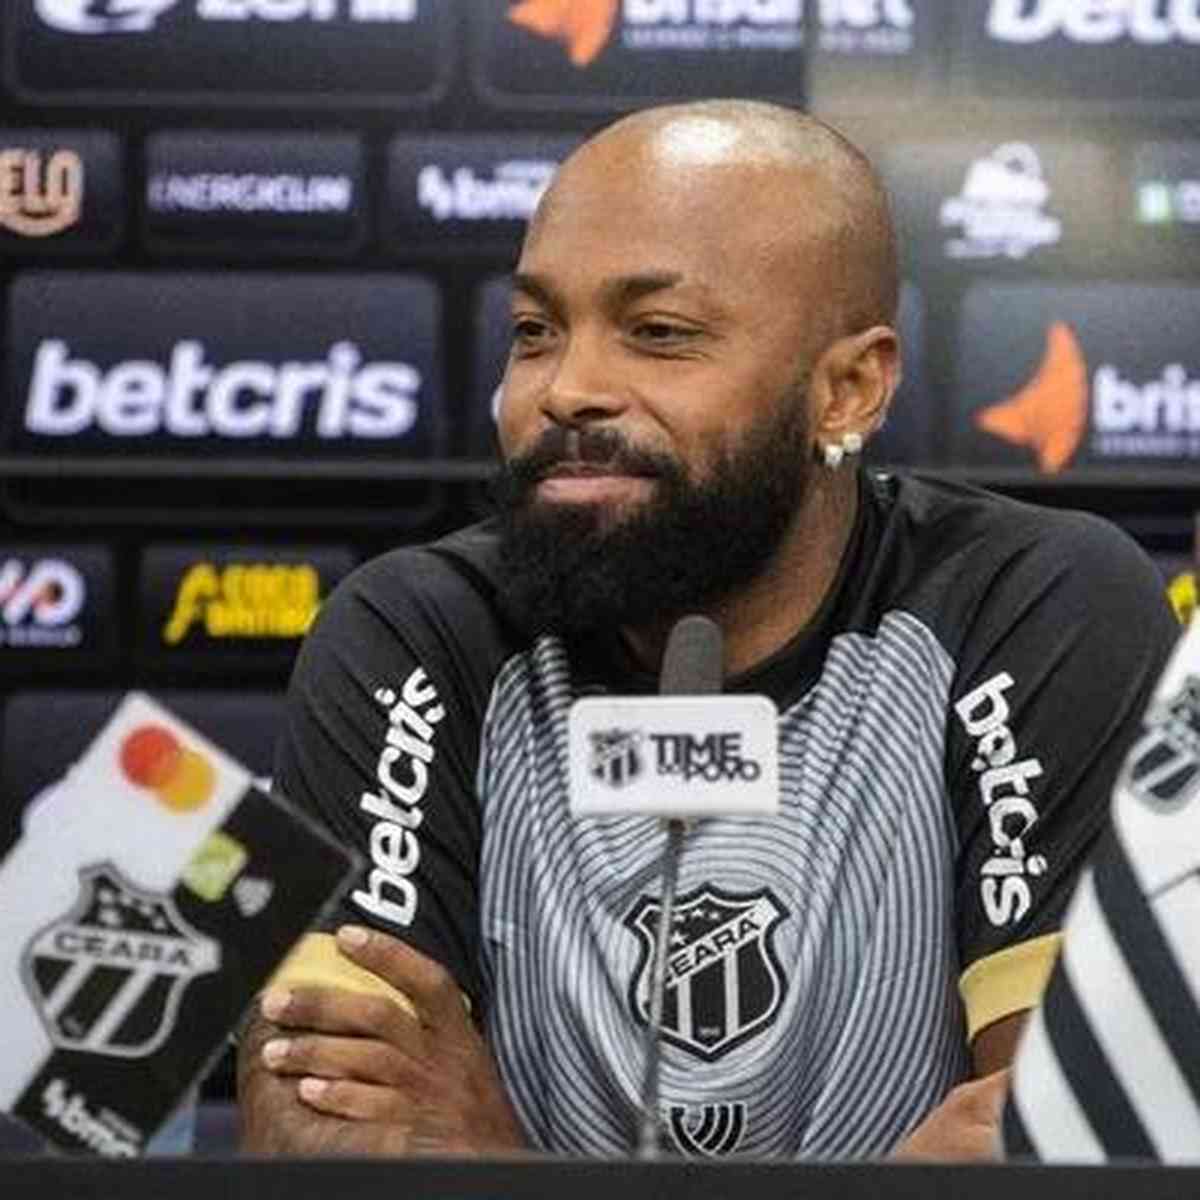 Cruzeiro anuncia contratação de Chay, do Botafogo, cruzeiro